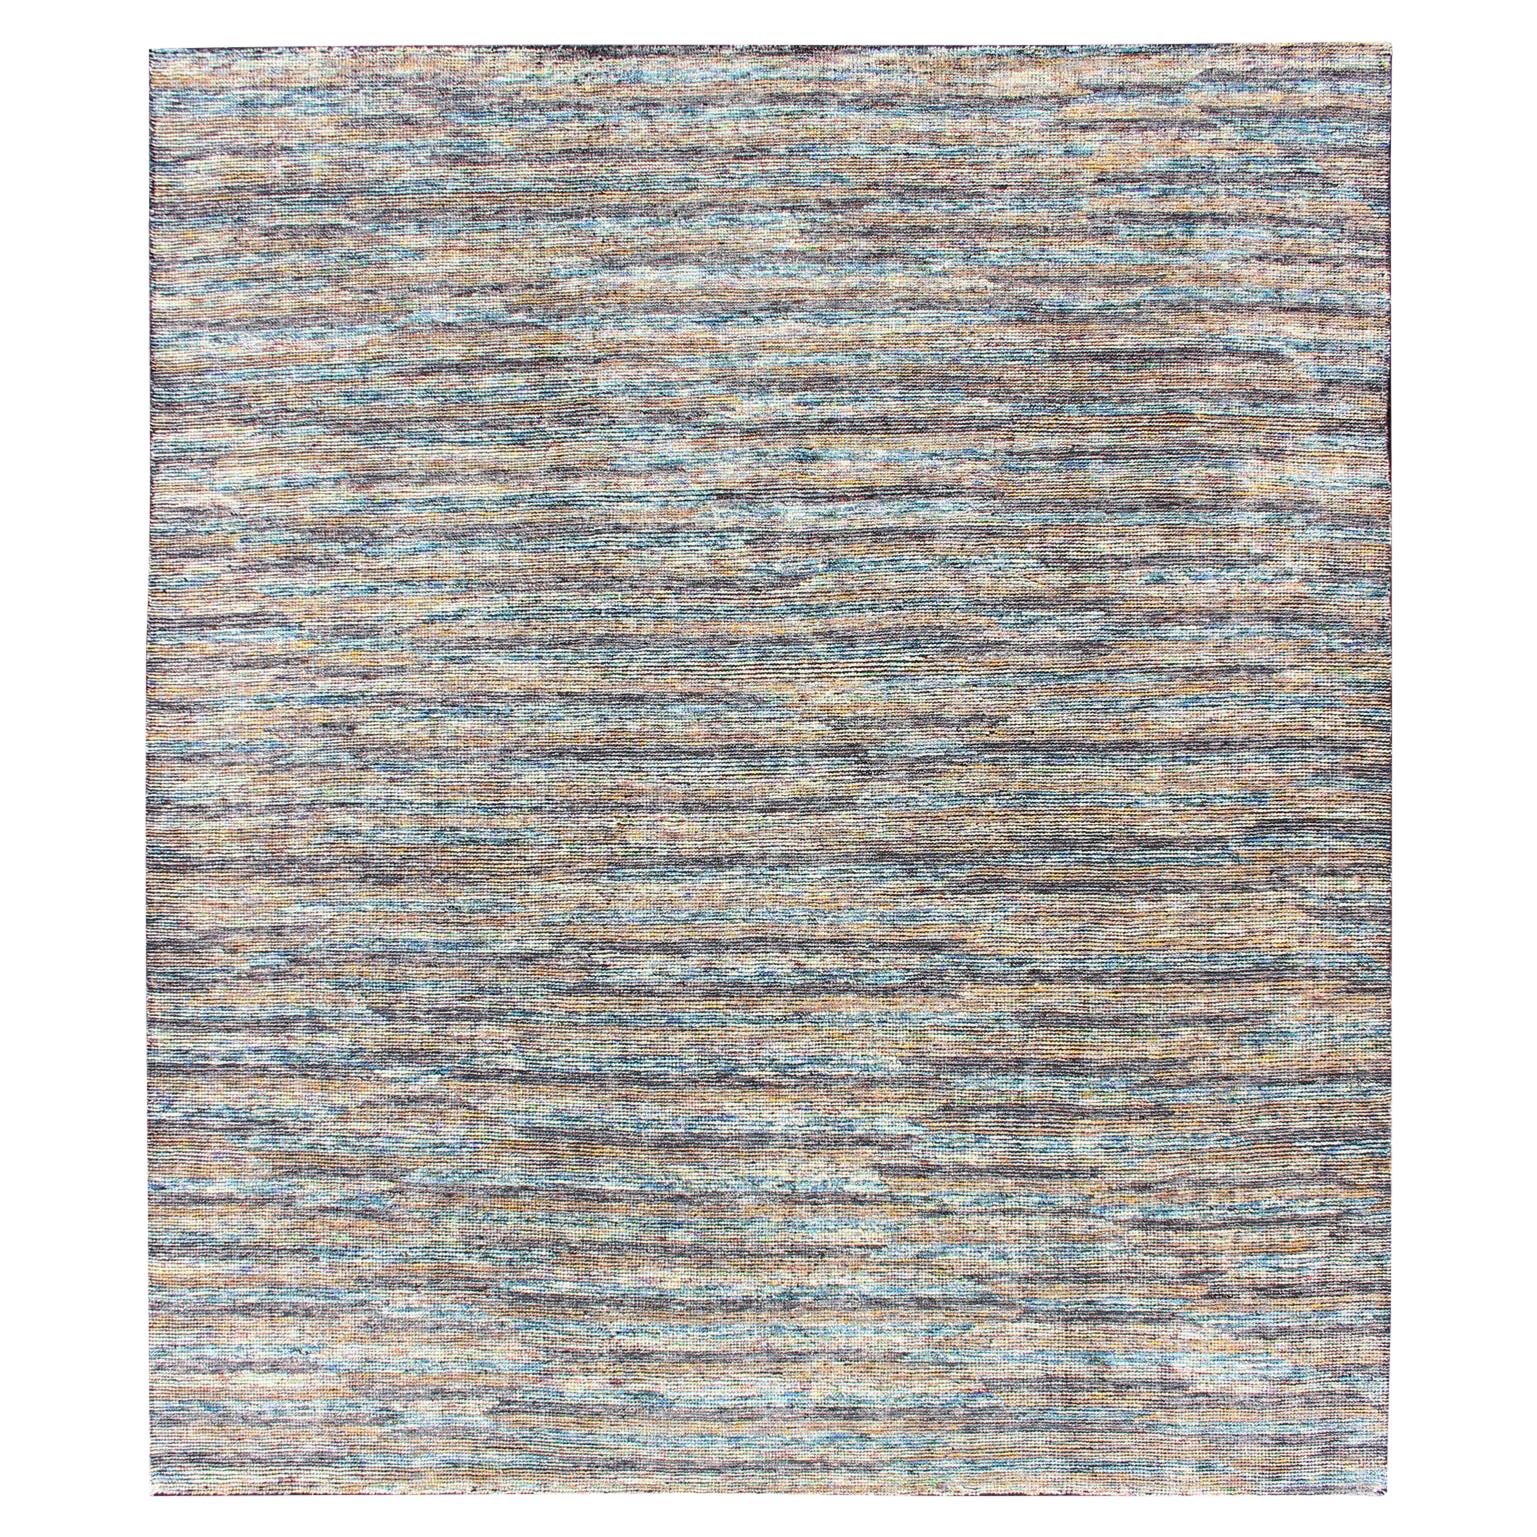 Magnifique tapis moderne vieilli dans de multiples nuances de gris, violet, bleu et jaune